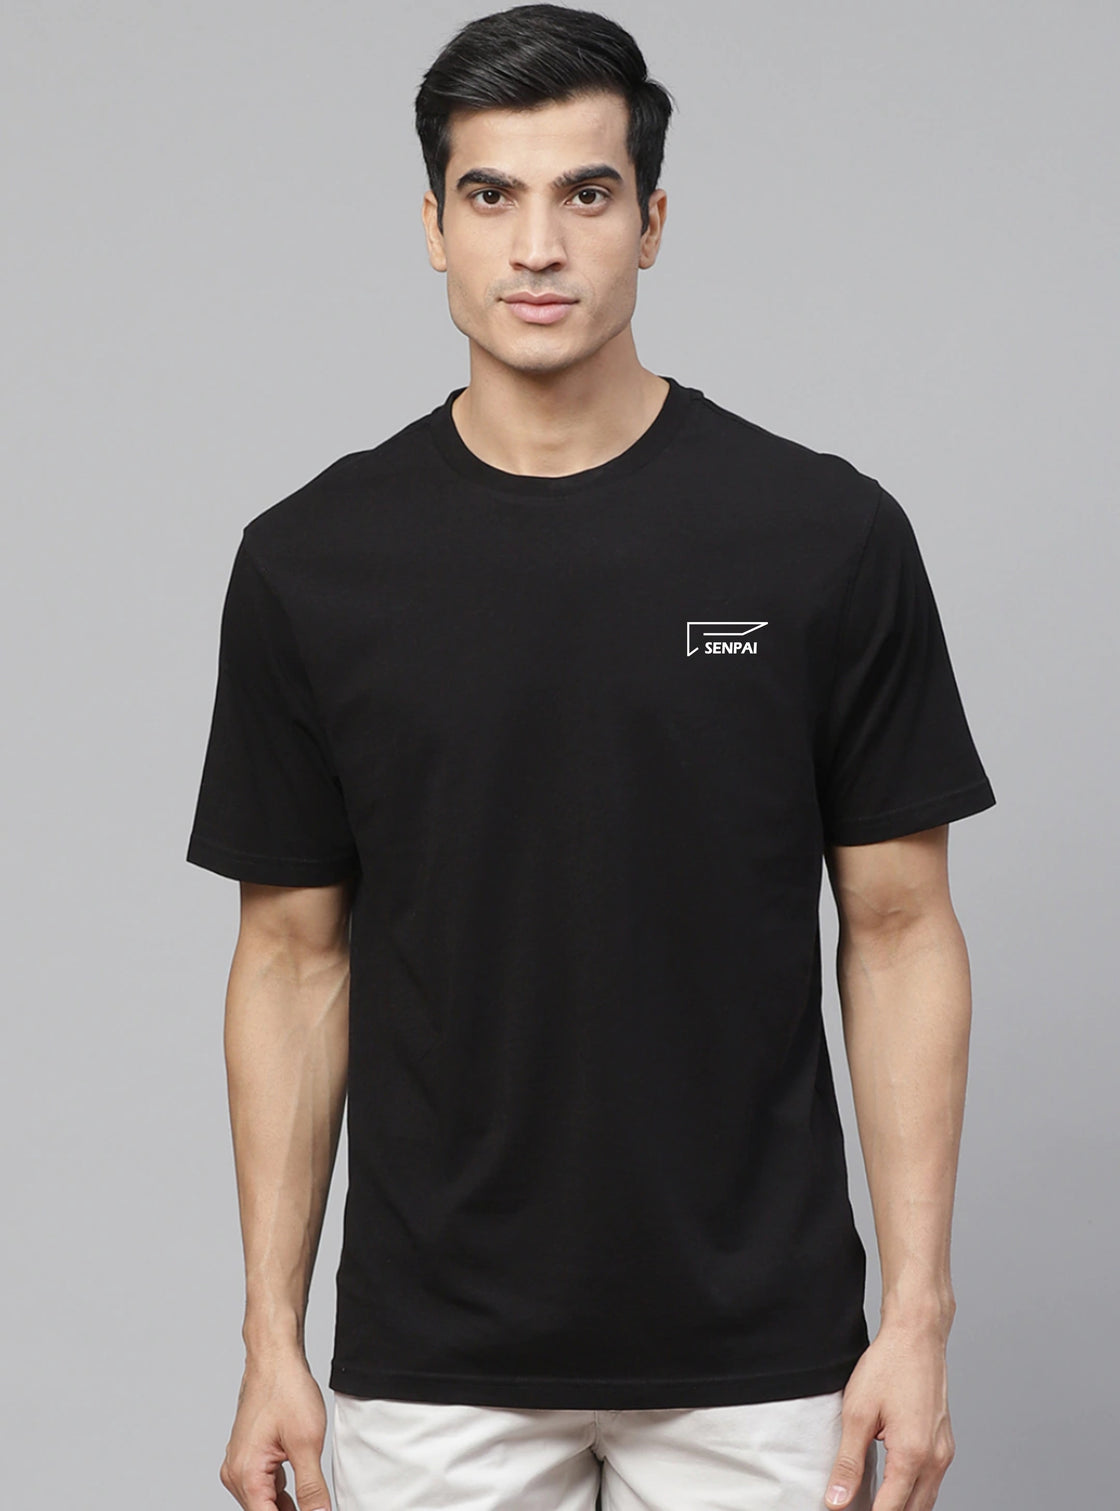 Men’s Sports Wear Round Neck T-Shirt